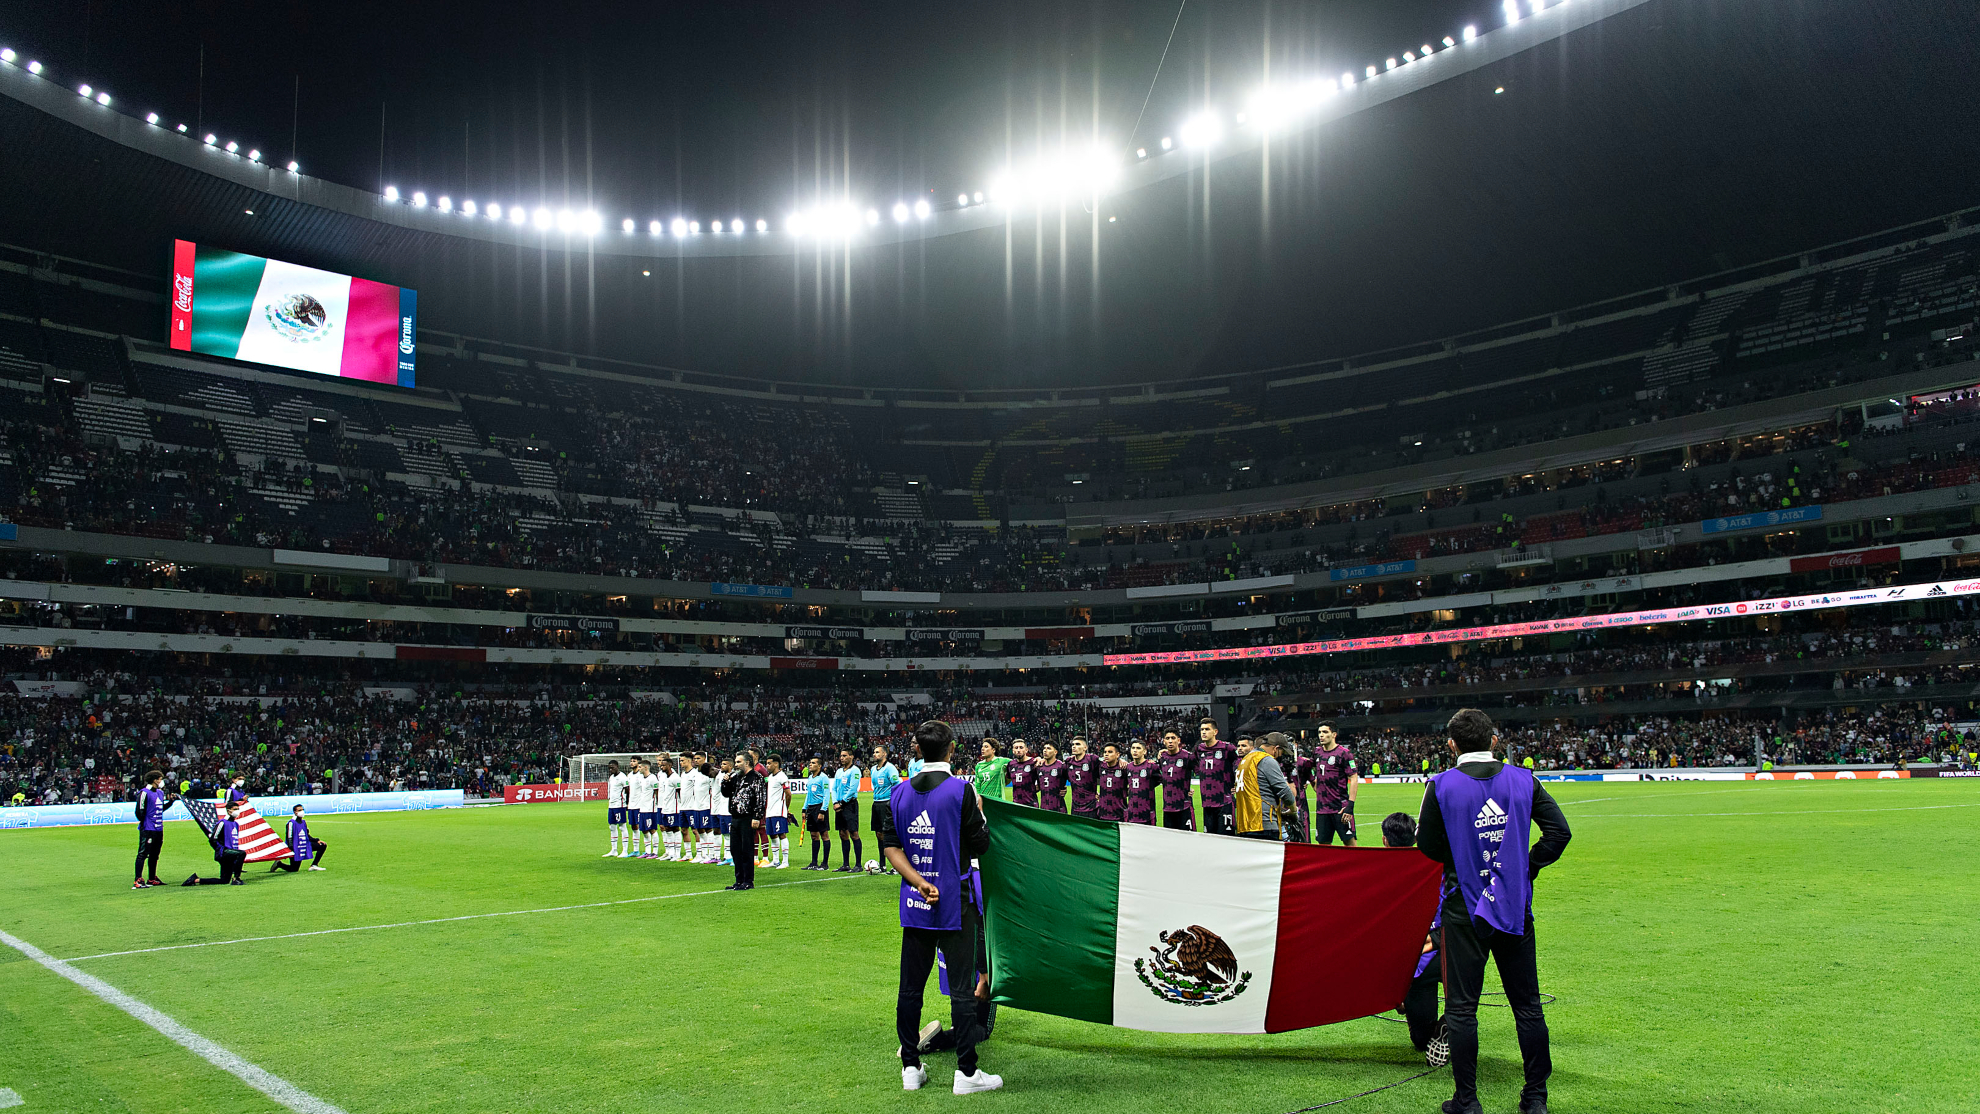 Felix Aguirre, director del Estadio Azteca sobre la sede en el 2026: "Es una oportunidad única en la vida"